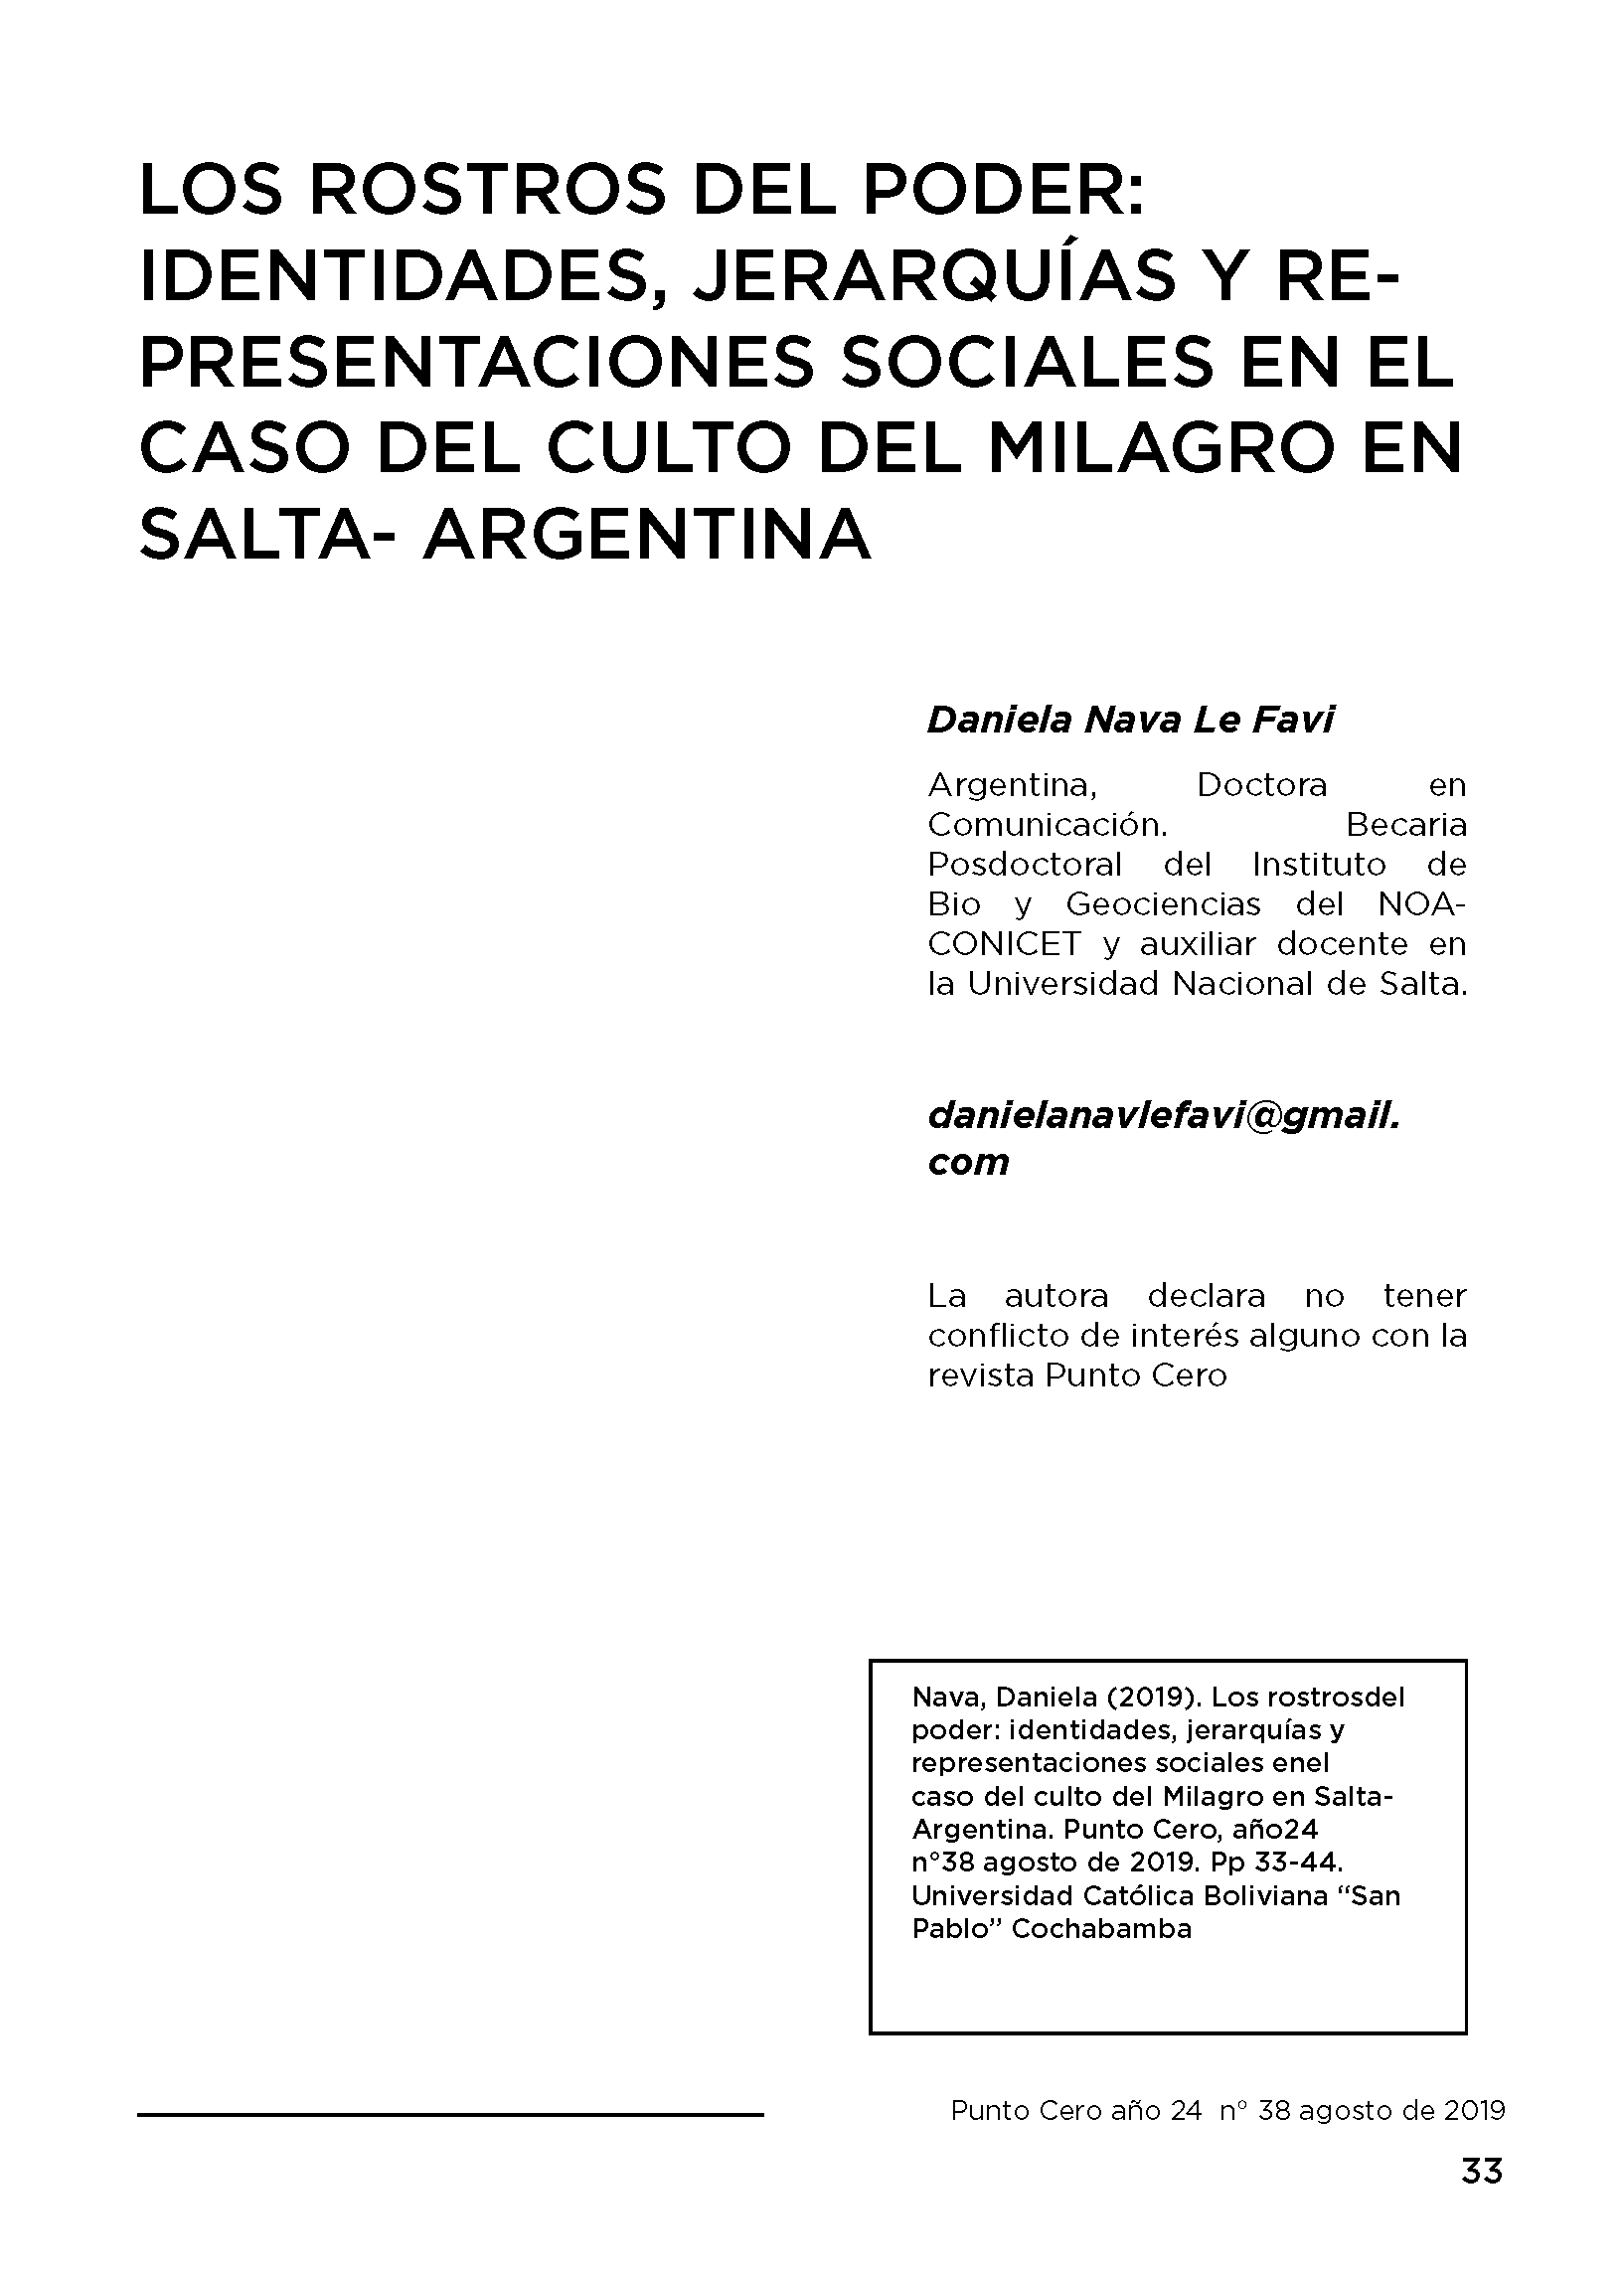 Los rostros del poder:  Identidades, jerarquías y representaciones sociales en el caso del culto del milagro en  Salta-Argentina